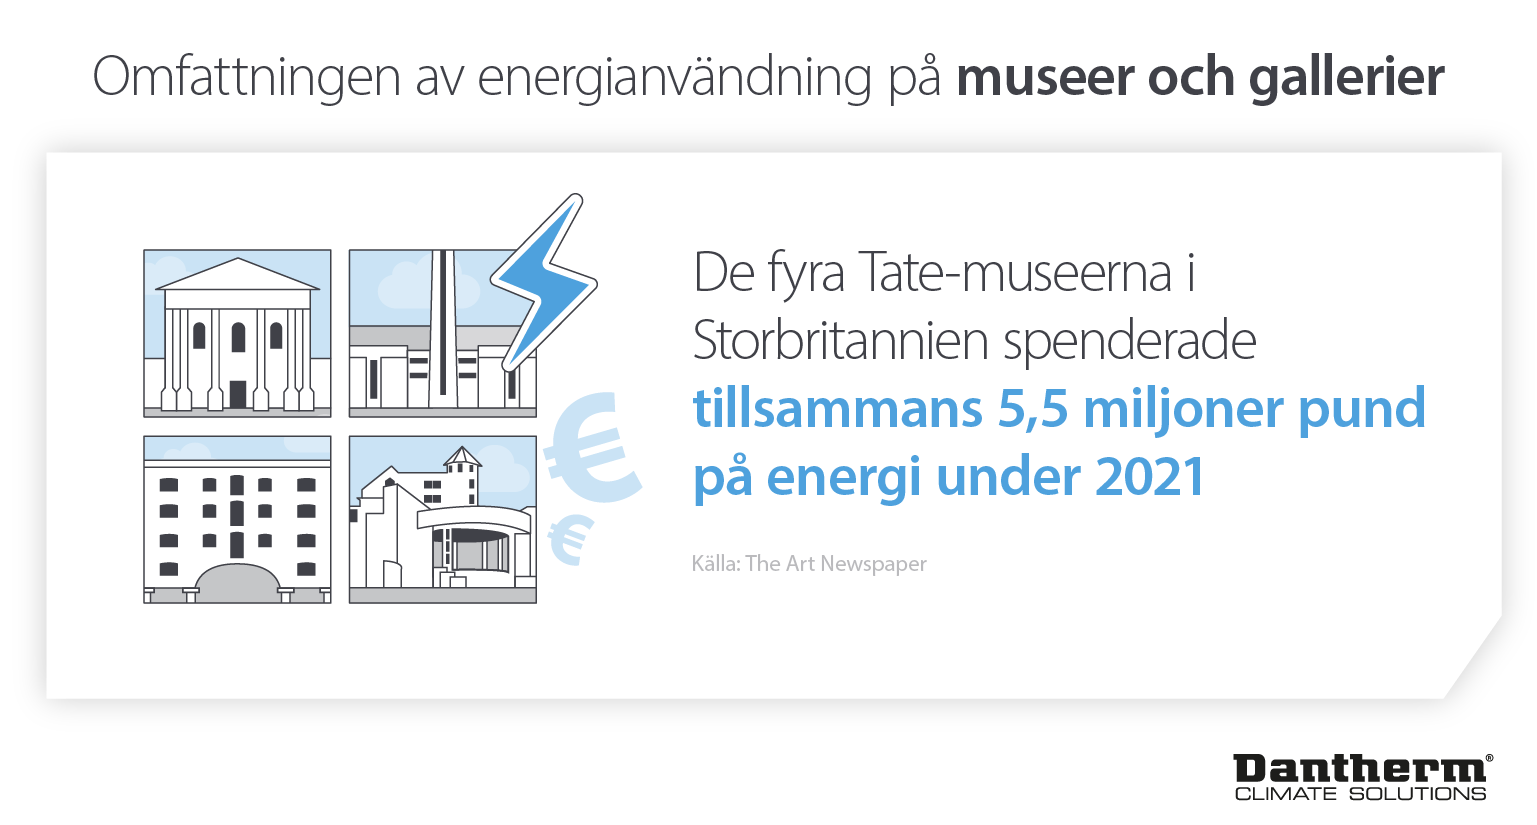 Museers och galleriers energianvändning visar att Tate-museerna spenderade 5,5 miljoner pund på energi år 2021 - Infografisk bild